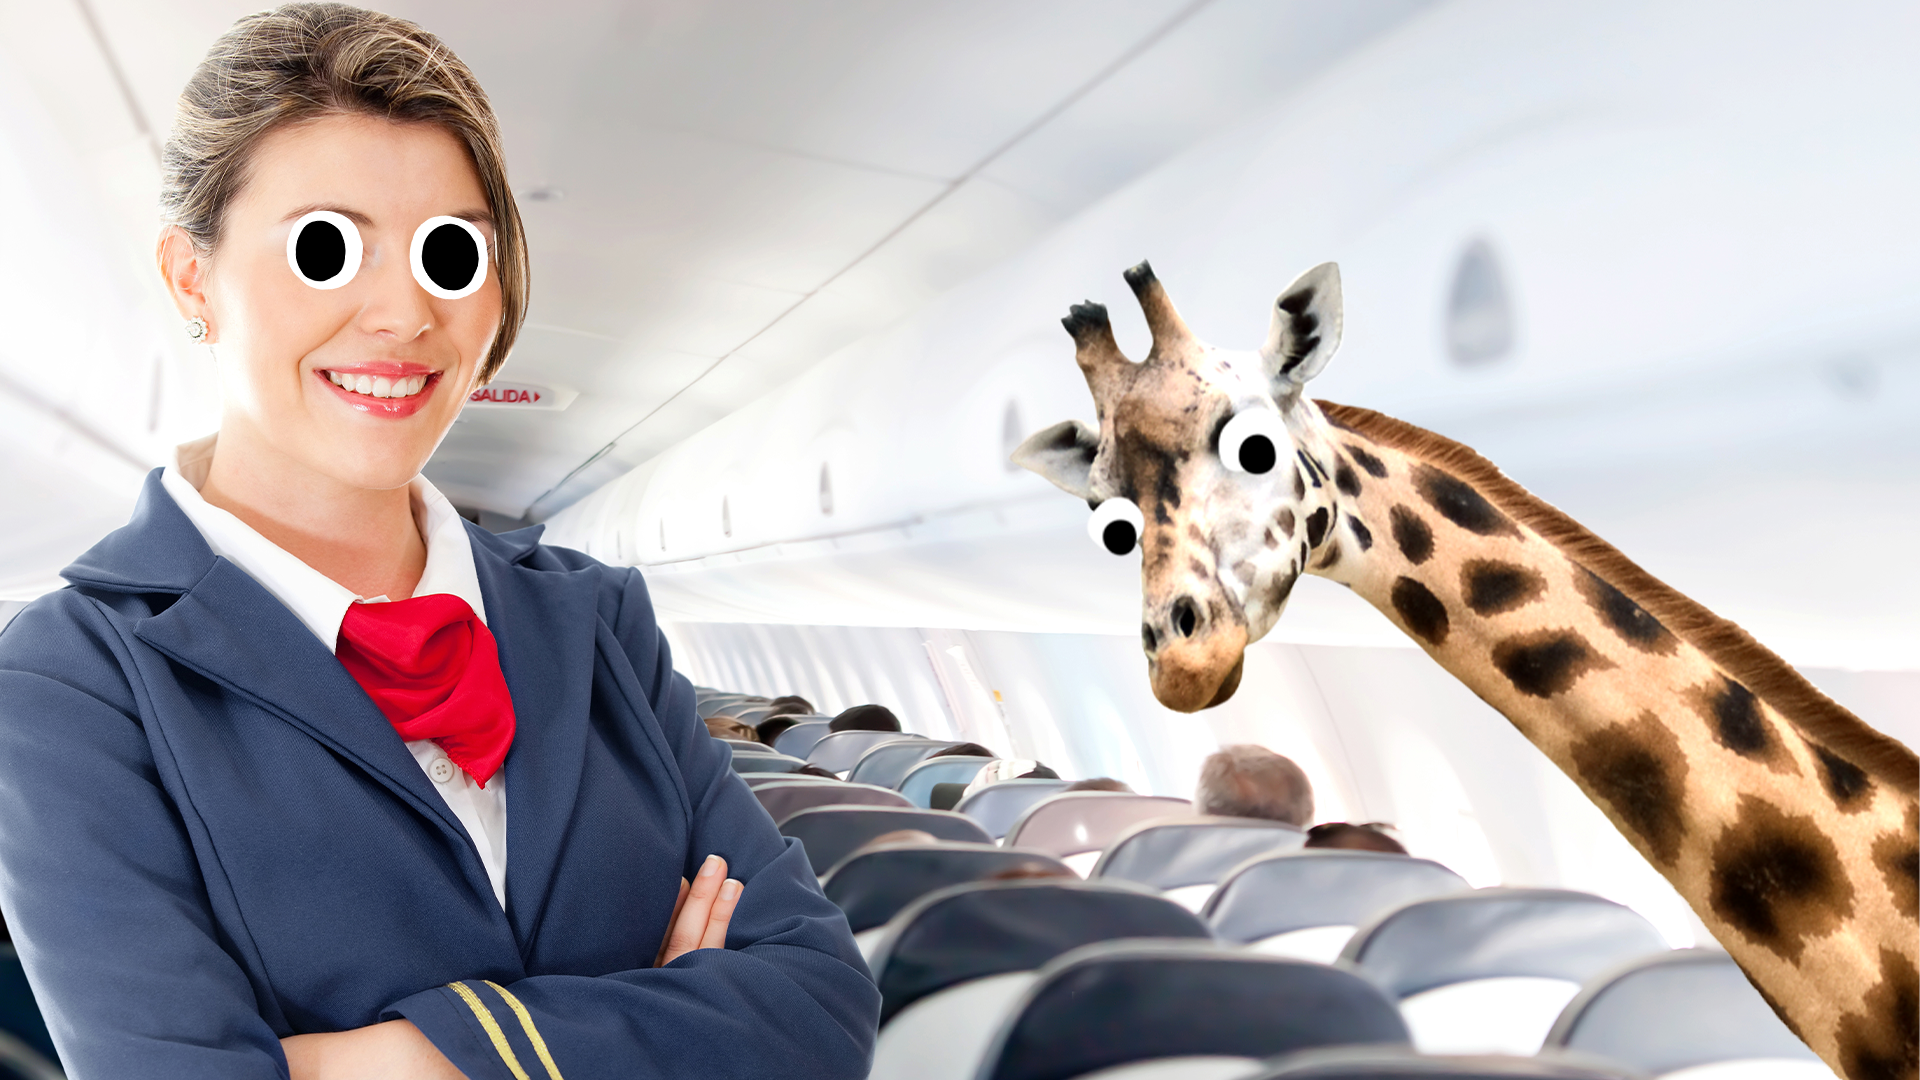 Air hostess on plan with derpy giraffe